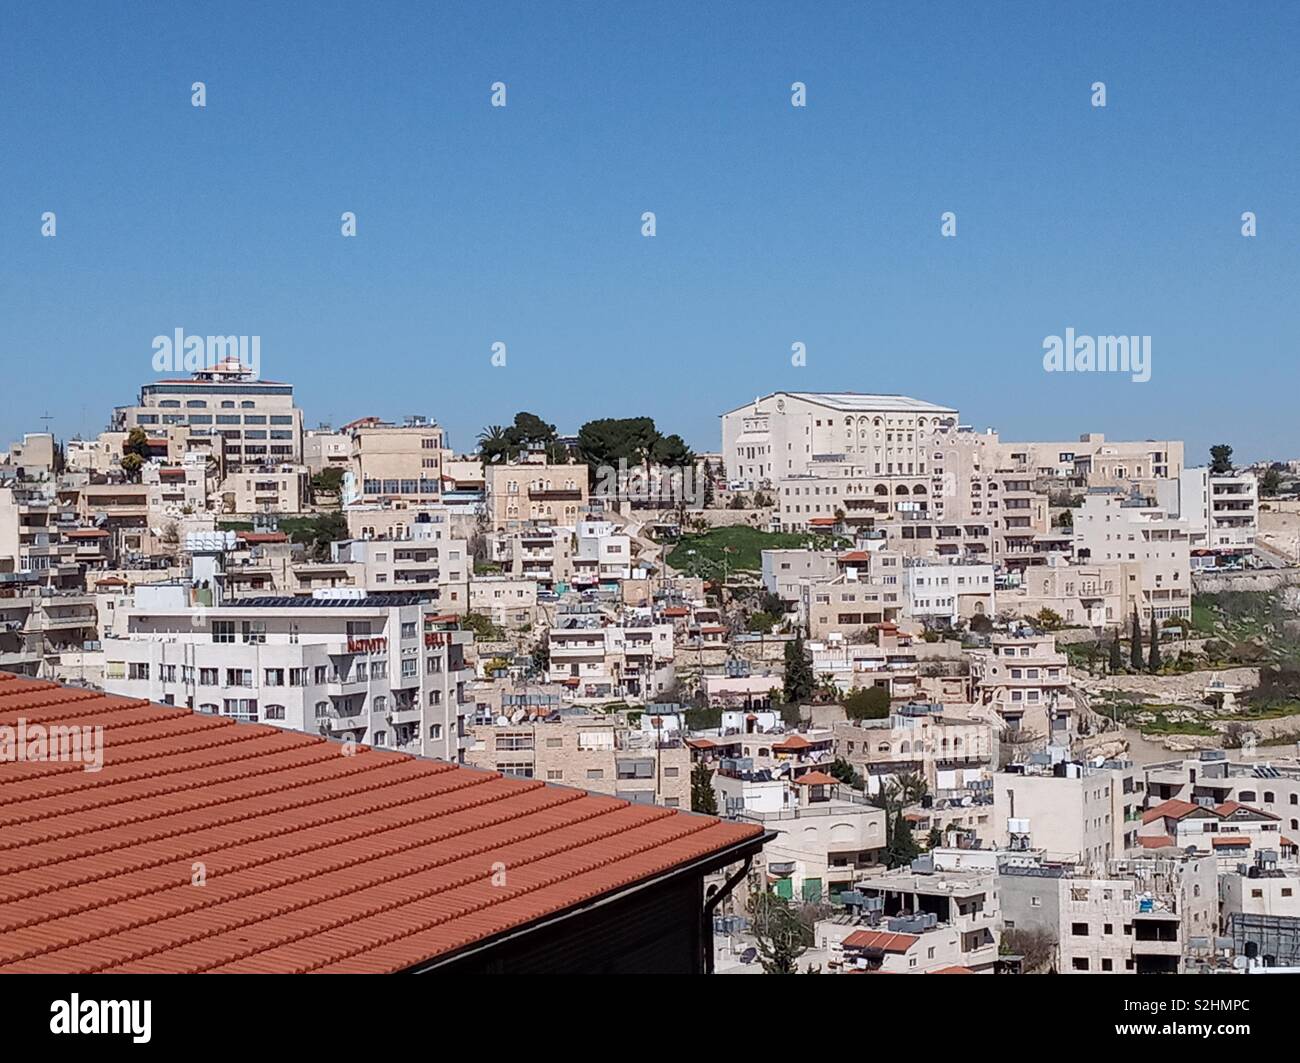 Beit lechem in Palestine. Stock Photo